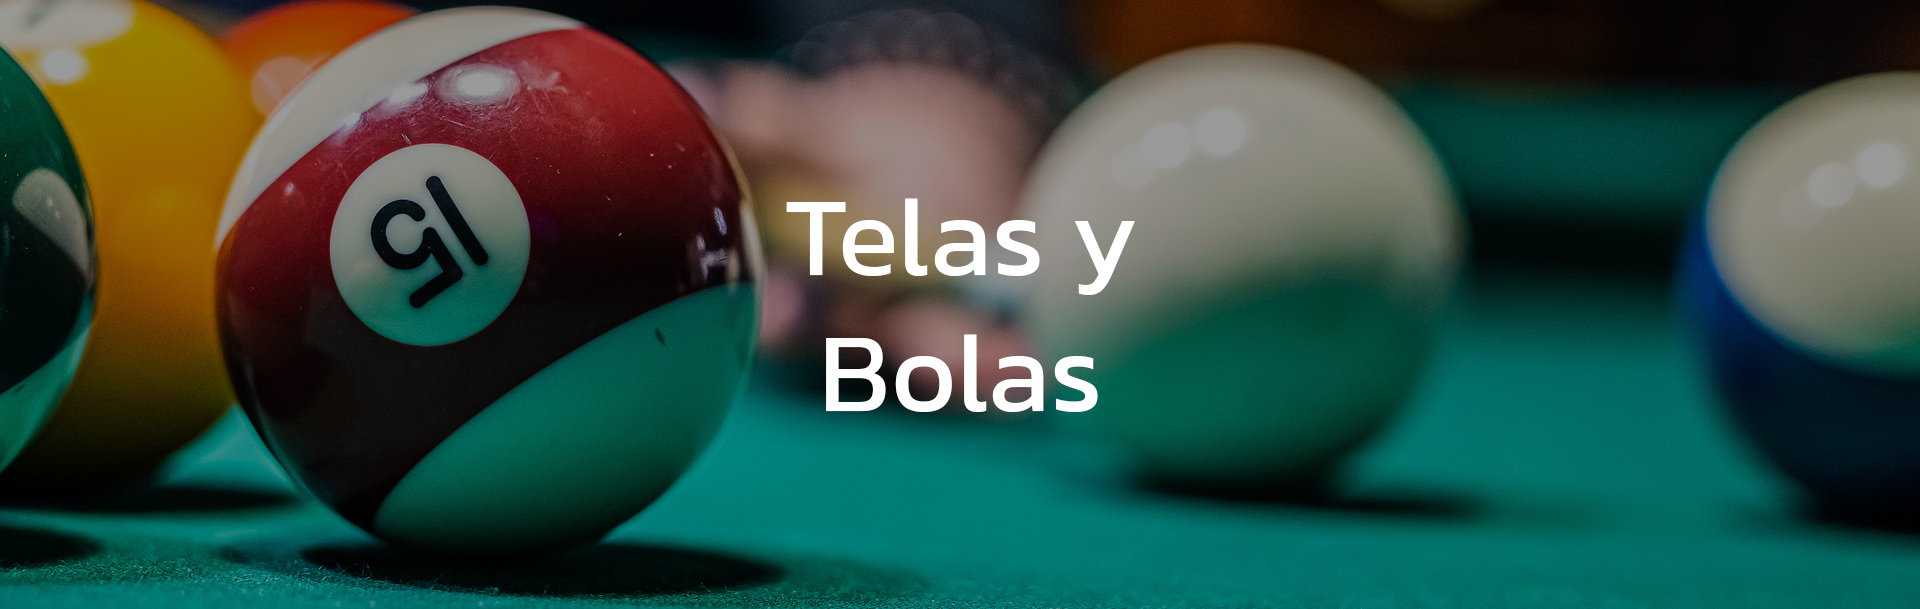 section-telas-bolas-bg